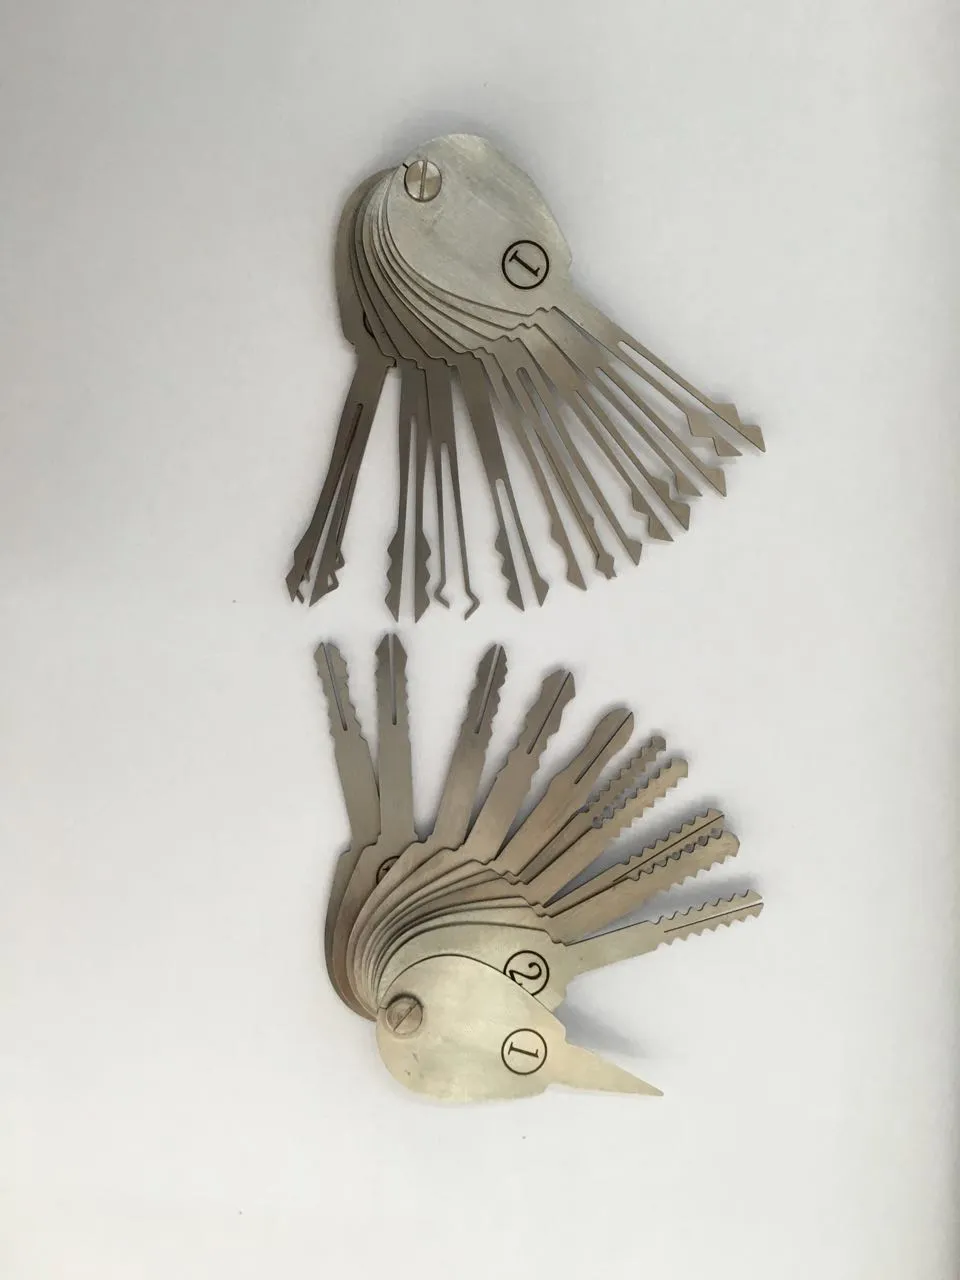 2015 새로운 21pcs 자동 양면 자물쇠를위한 자동적 인 Jigglers 열쇠는 열쇠의 세트를 고른다 자물쇠 Opener Lockpick는 자물쇠 제조공 공구를 놓는다